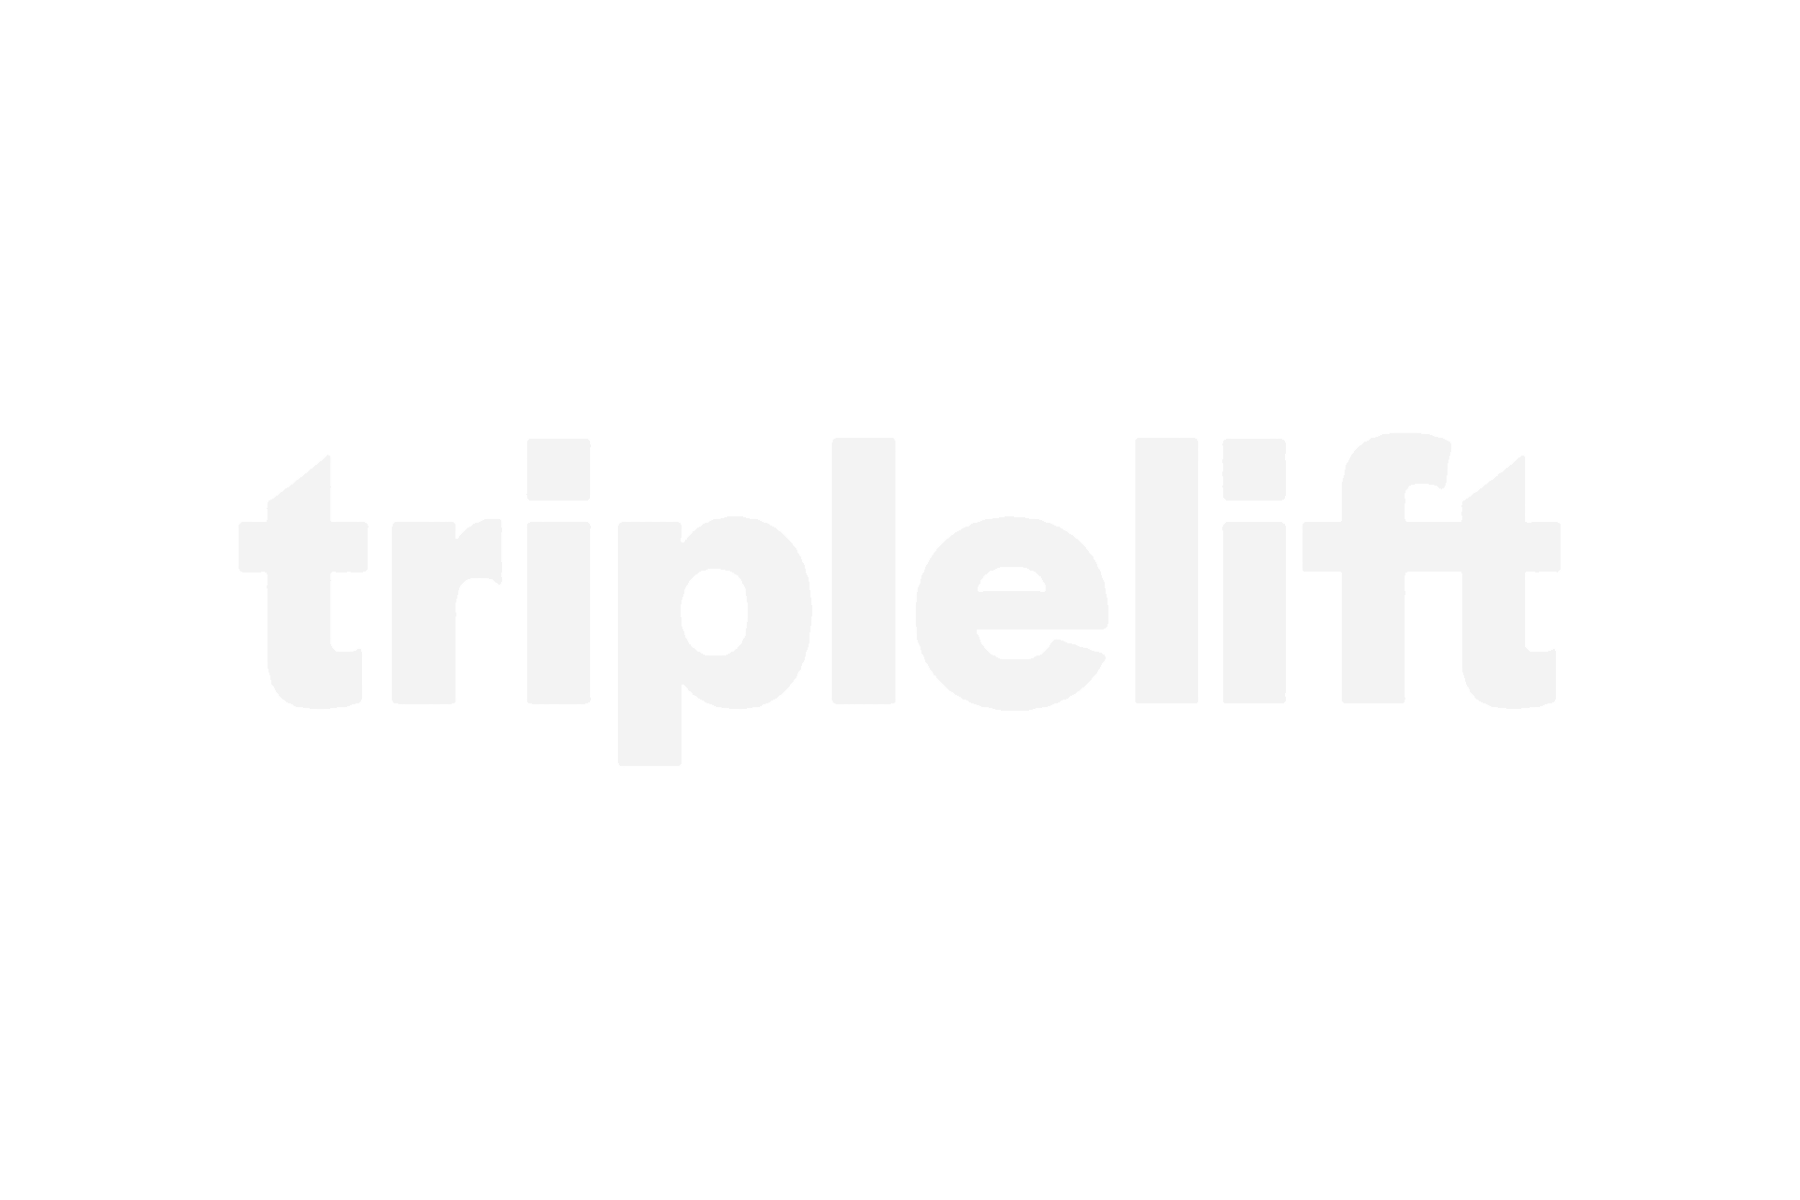 Triplelift